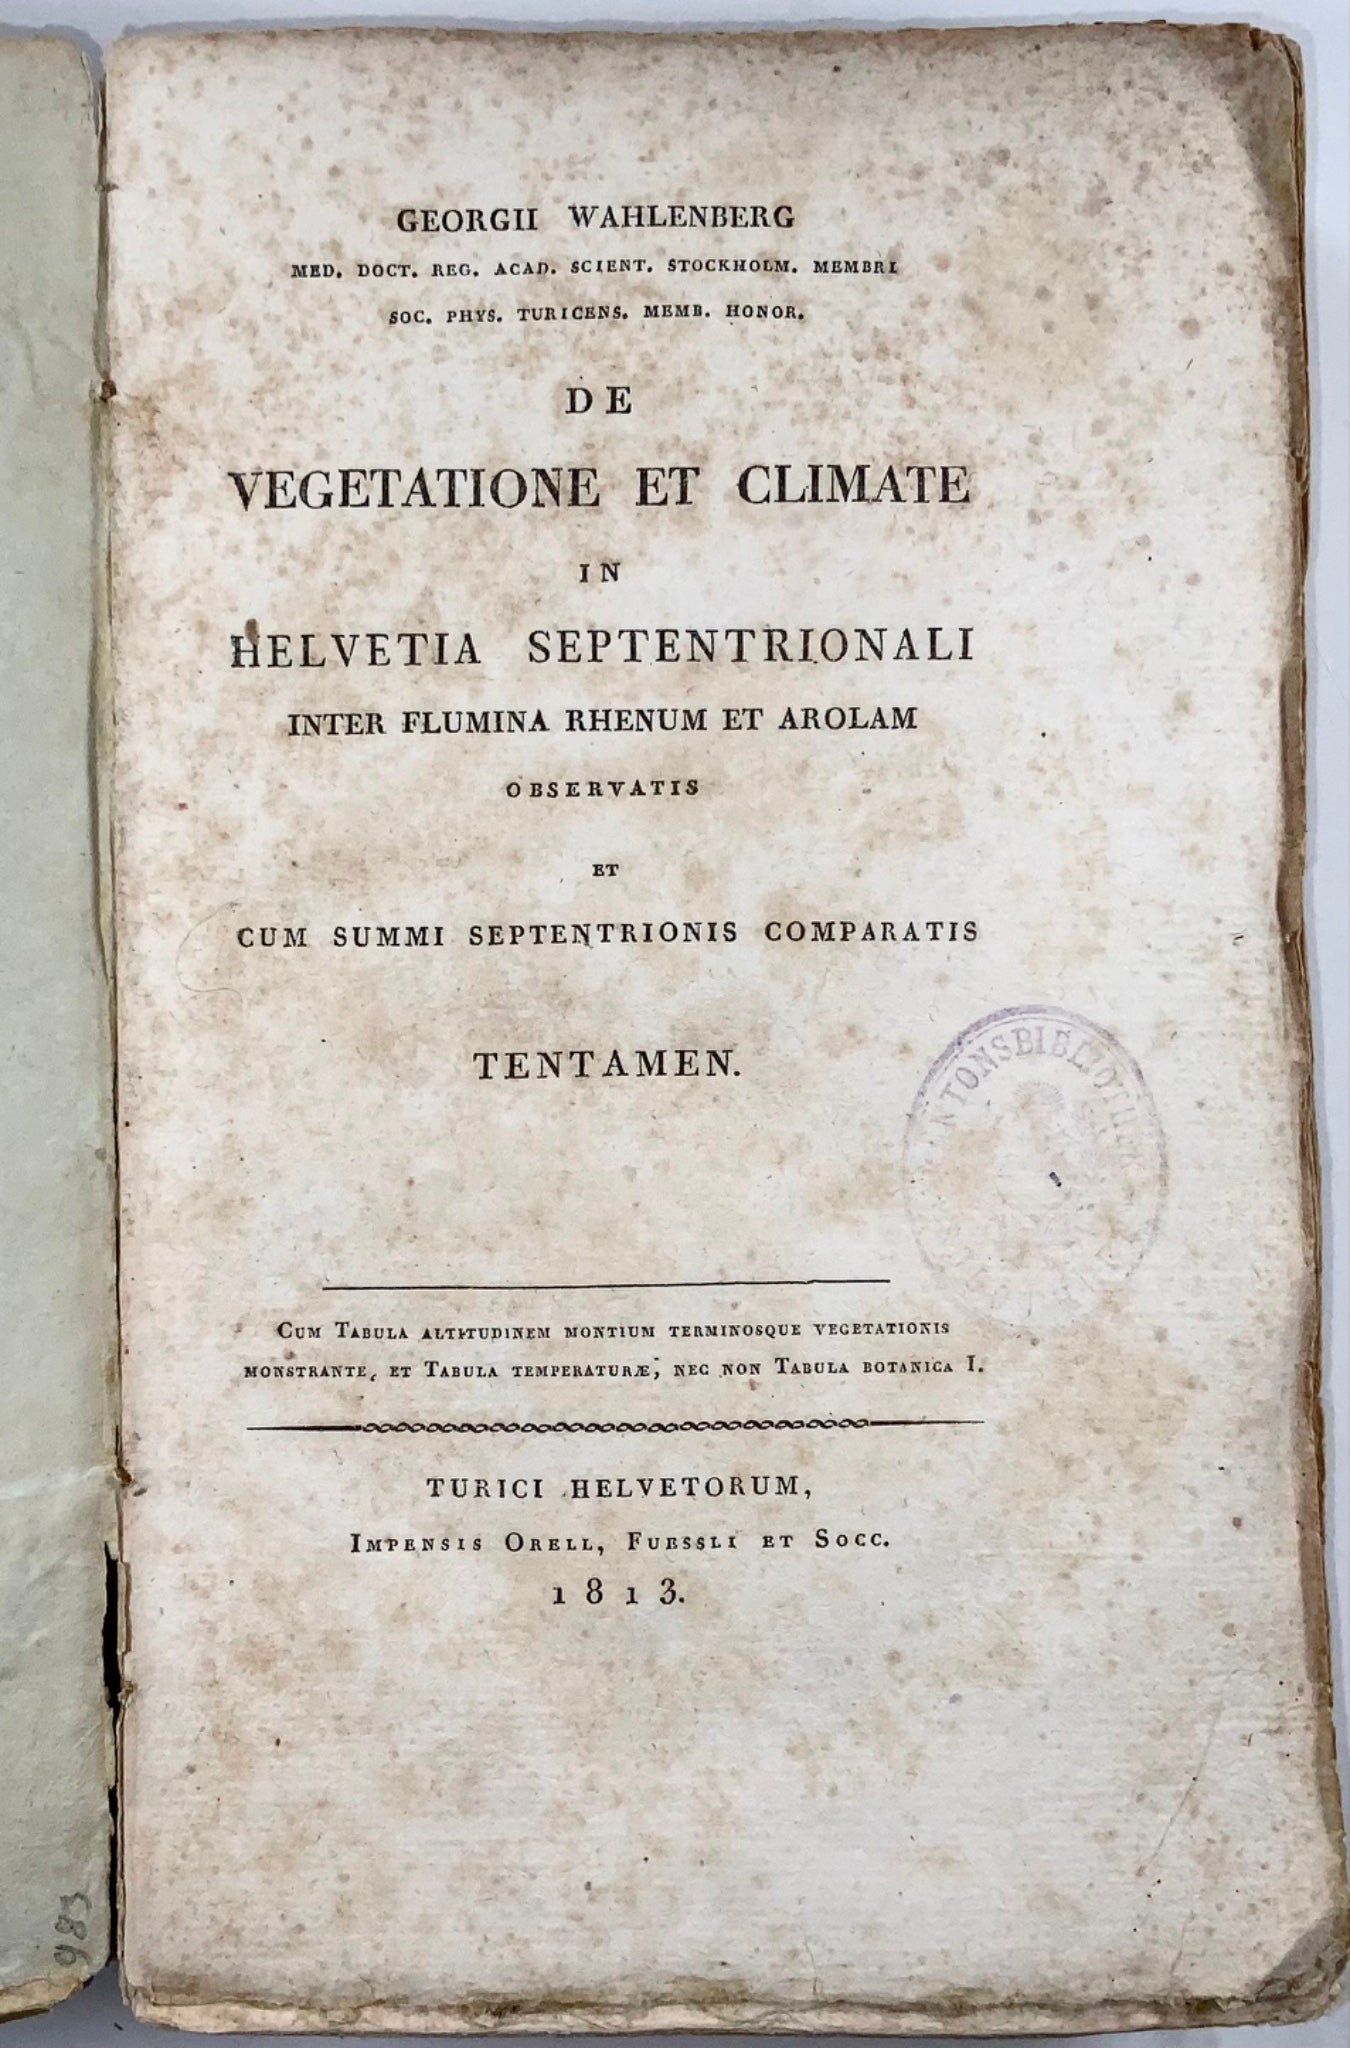 1813 Wahlenberg, opera classica sull'ecologia vegetale, ottima provenienza, illustrata